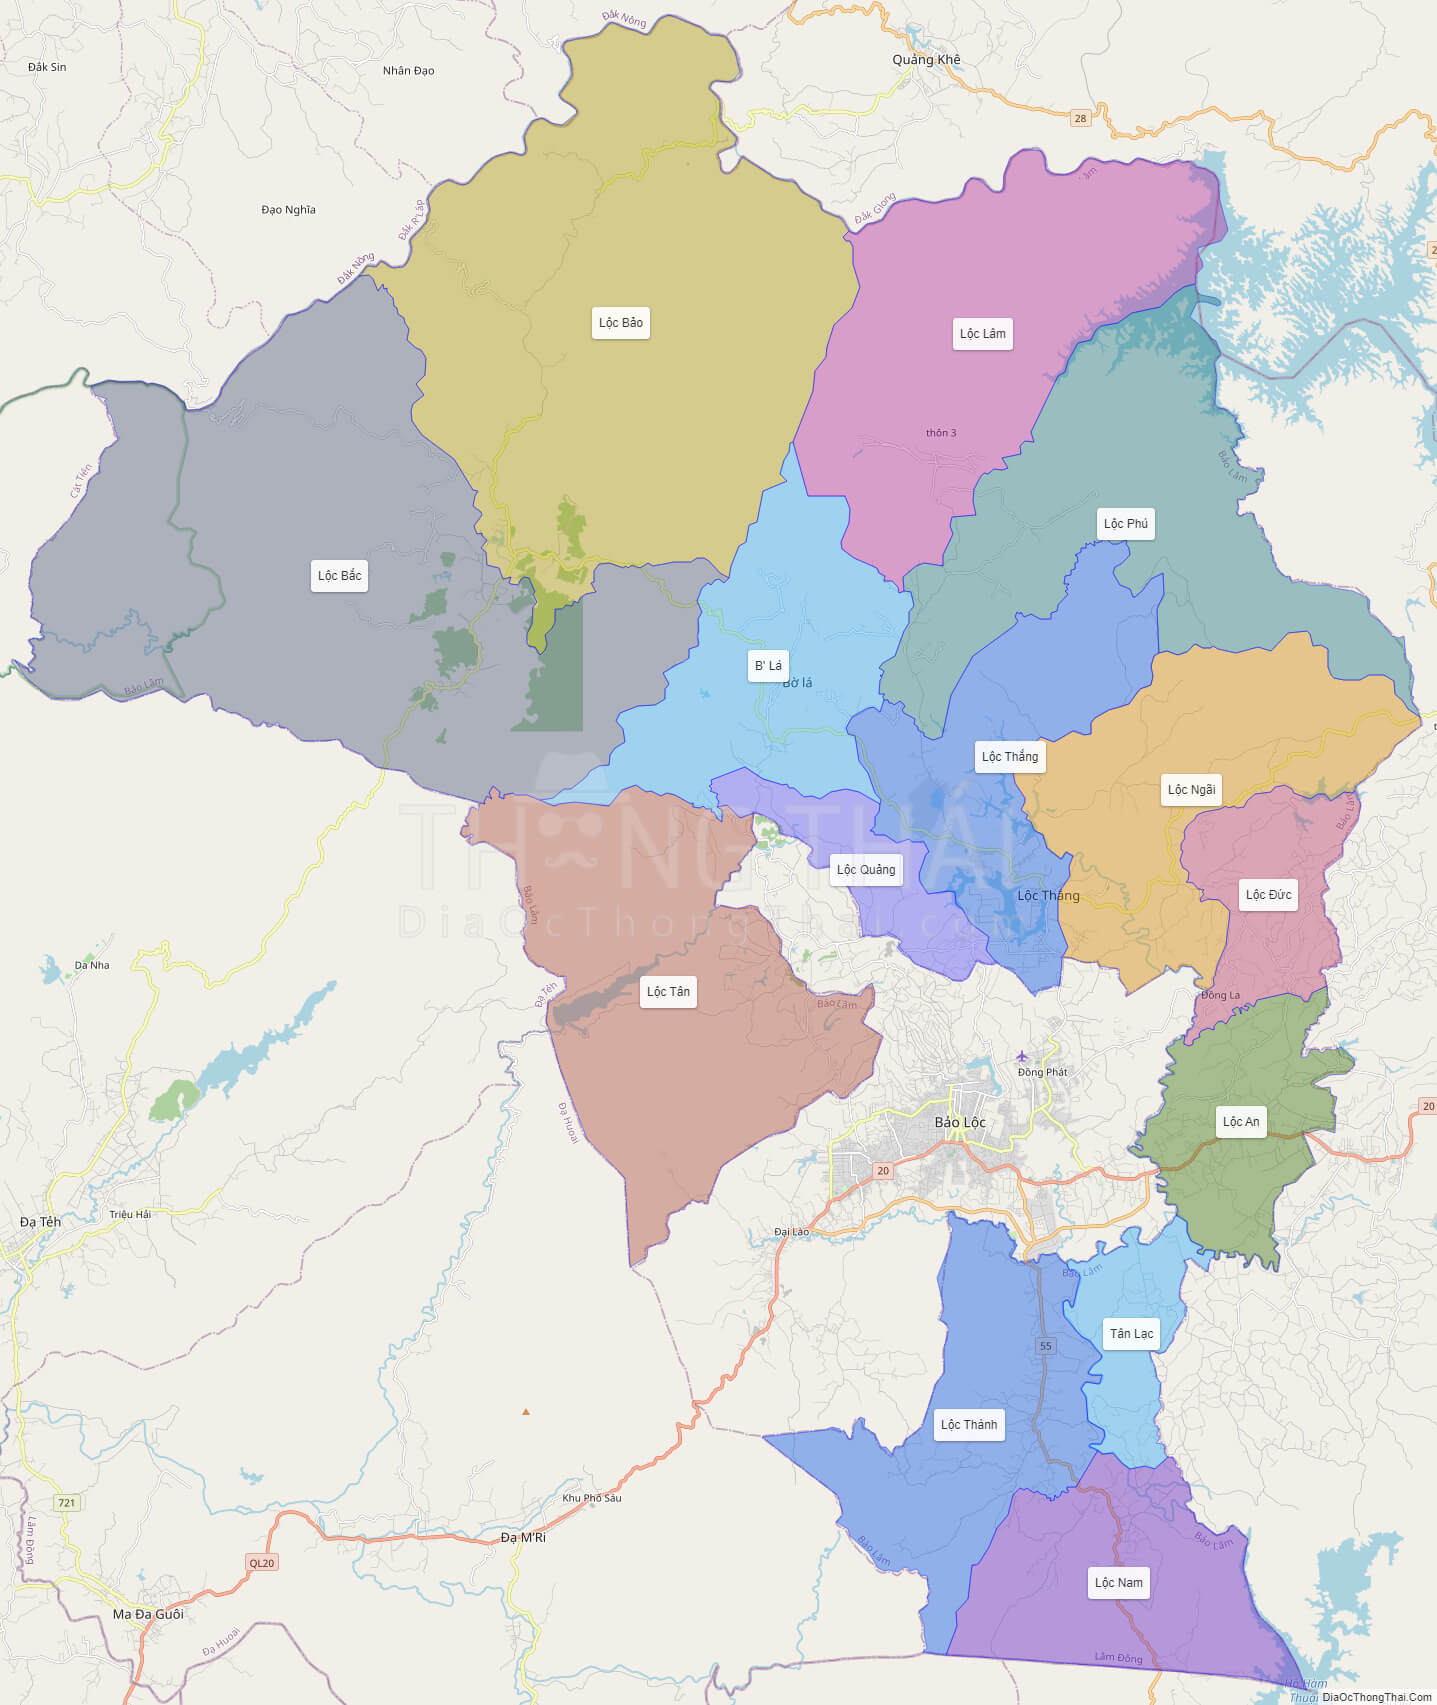 Những thông tin mới nhất về tỉnh Lâm Đồng đã được cập nhật trên bản đồ mới nhất của năm 2024! Hãy khám phá những điểm đến mới và những mô hình phát triển đang được đầu tư và phát triển trong khu vực này. Bản đồ Lâm Đồng sẽ cung cấp cho bạn những thông tin cần thiết để du lịch, đầu tư hoặc kinh doanh trong khu vực này.